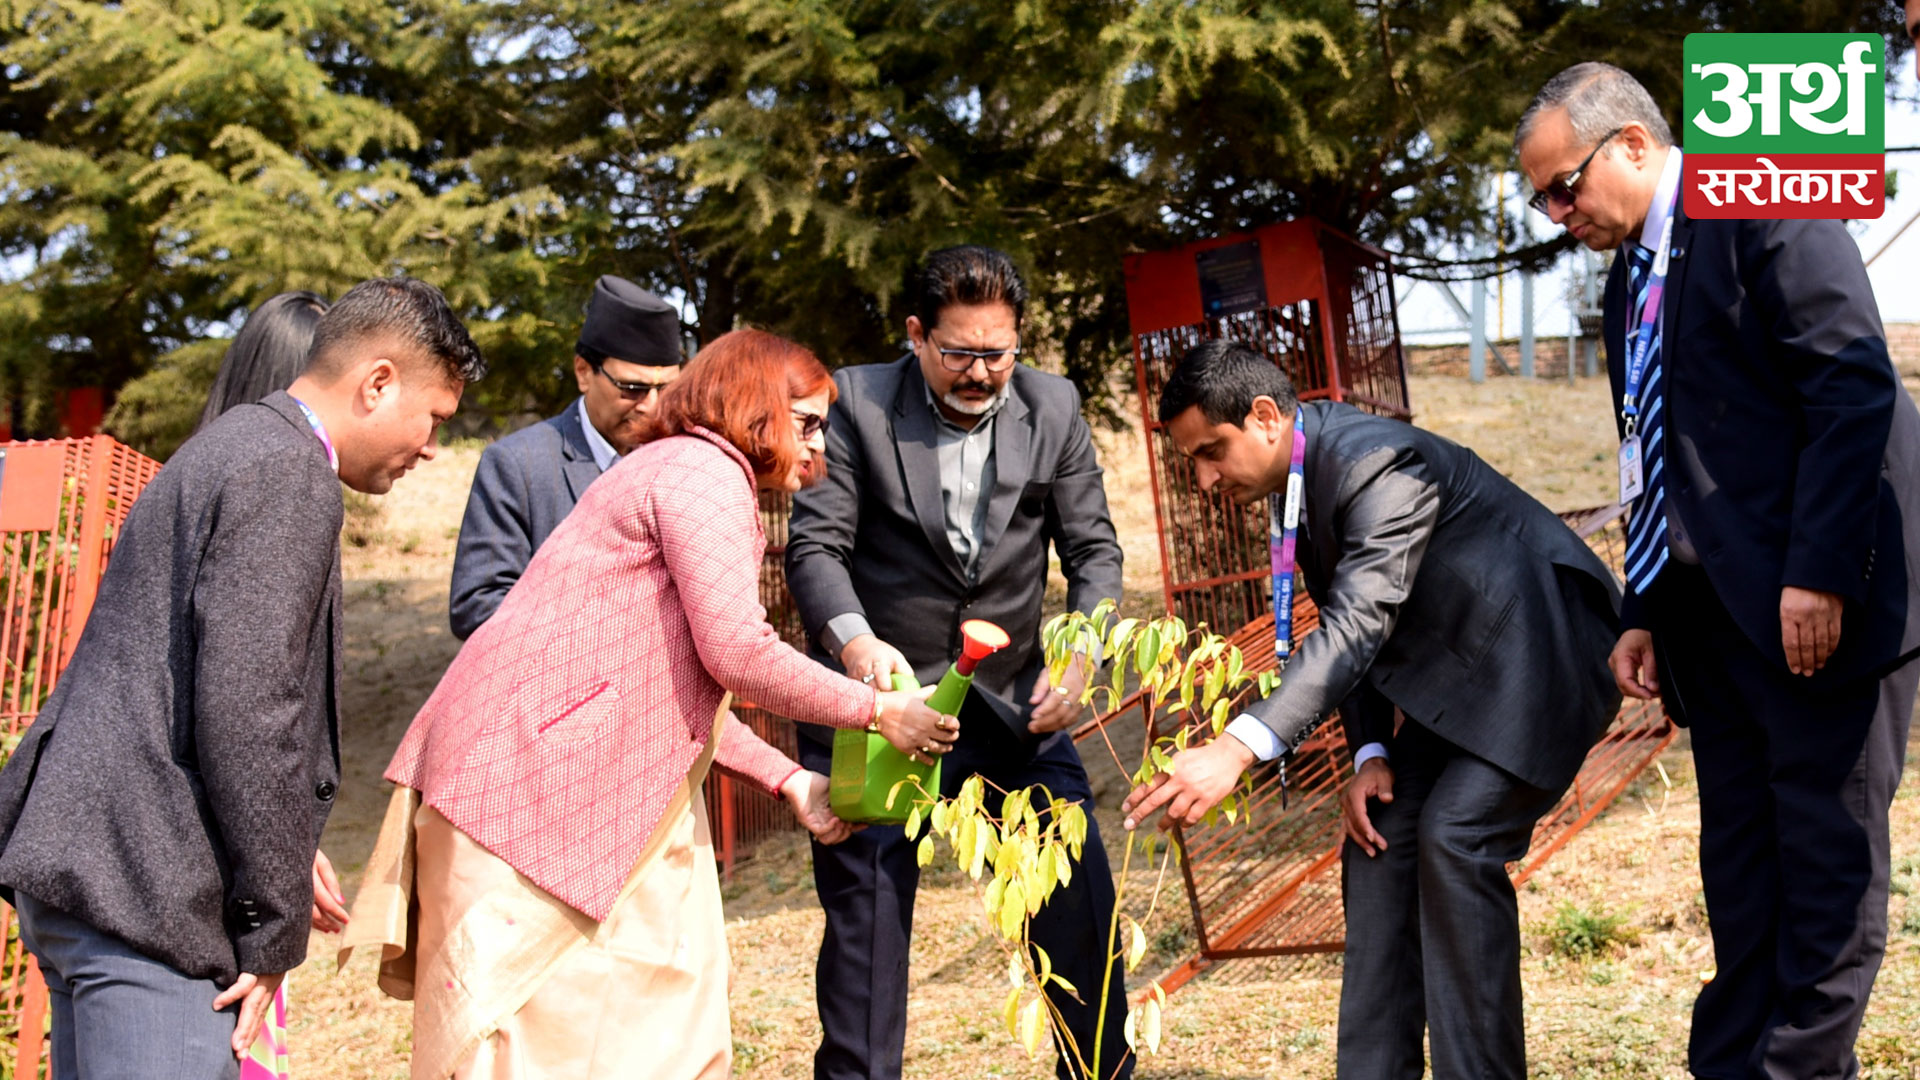 Tree Plantation Program at Pashupati Temple Premises